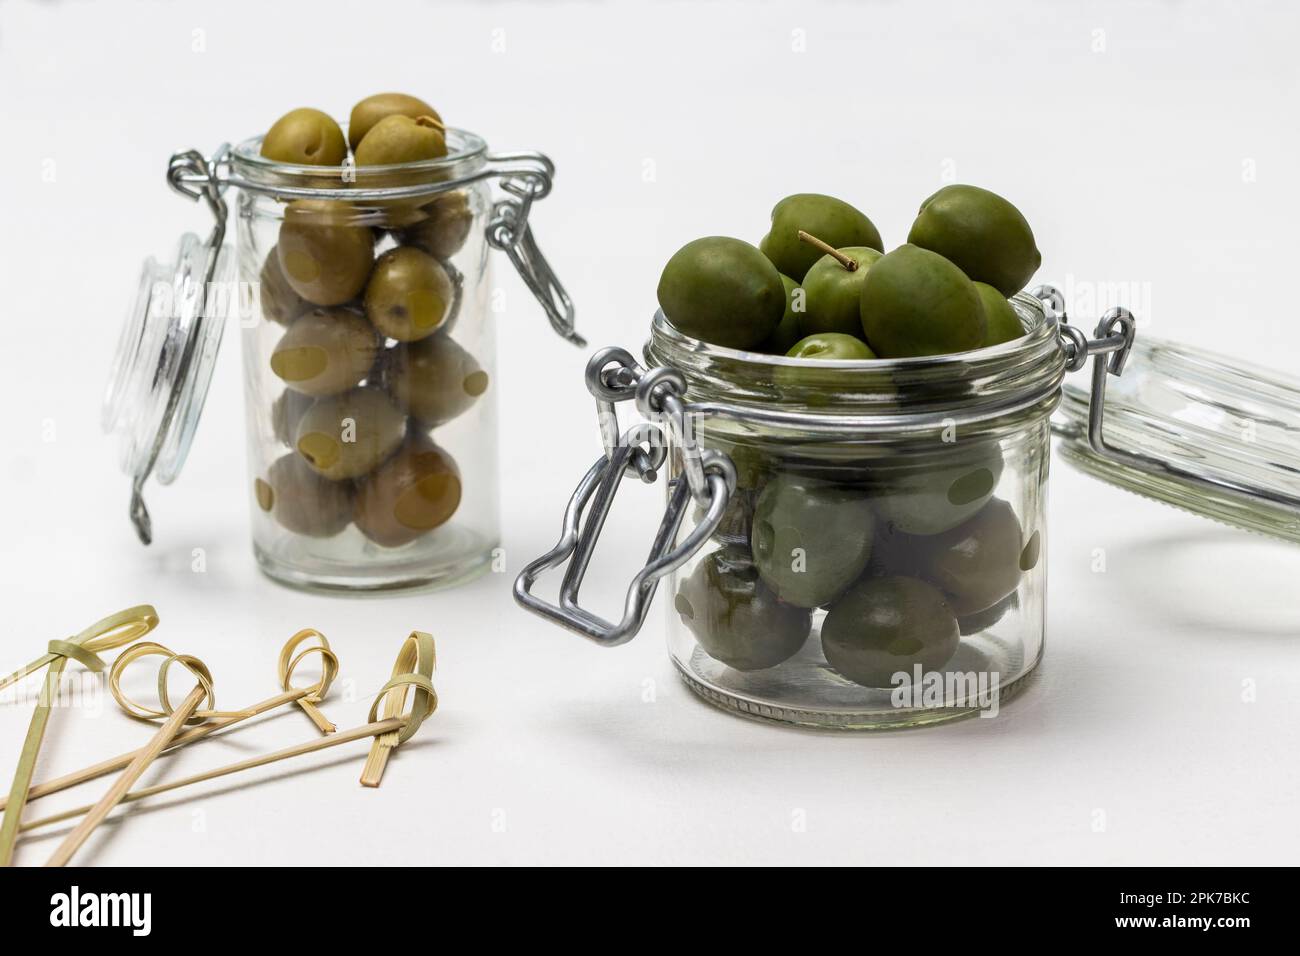 Oliven in Glasgefäßen. Spieße auf dem Tisch. Weißer Hintergrund. Stockfoto